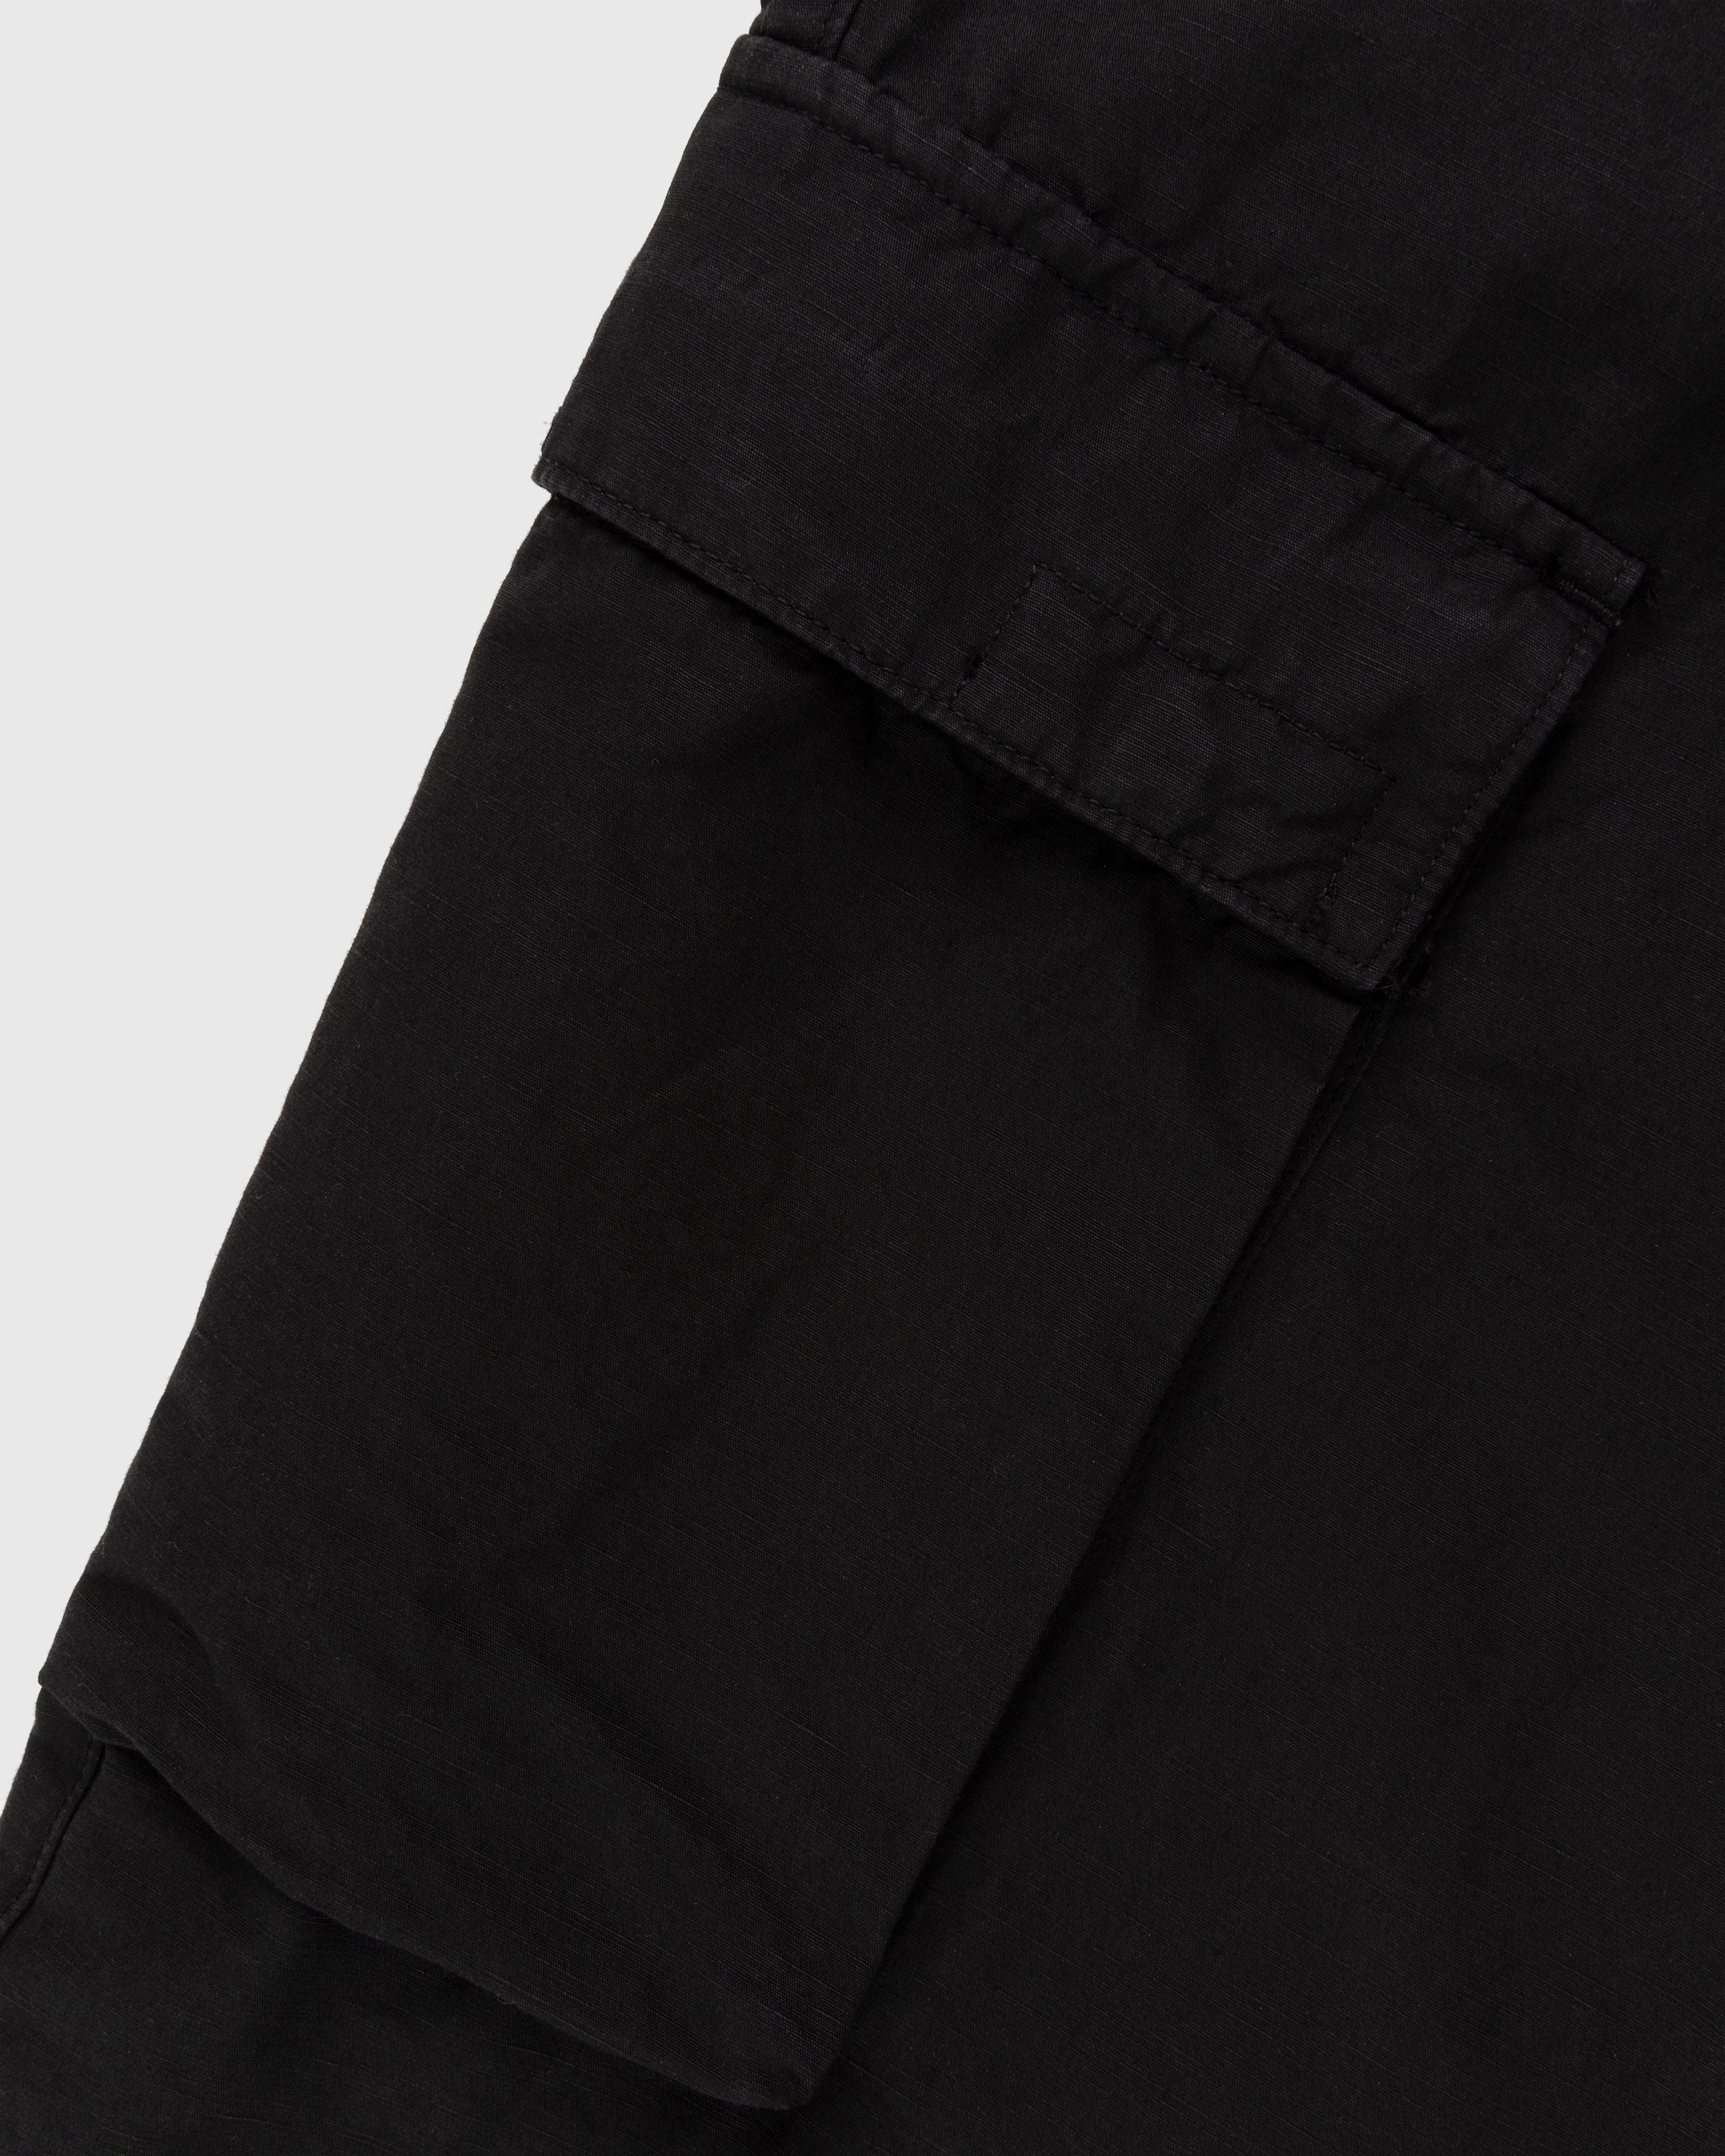 Stone Island - 31706 Garment-Dyed Cargo Pants Black - Clothing - Black - Image 5